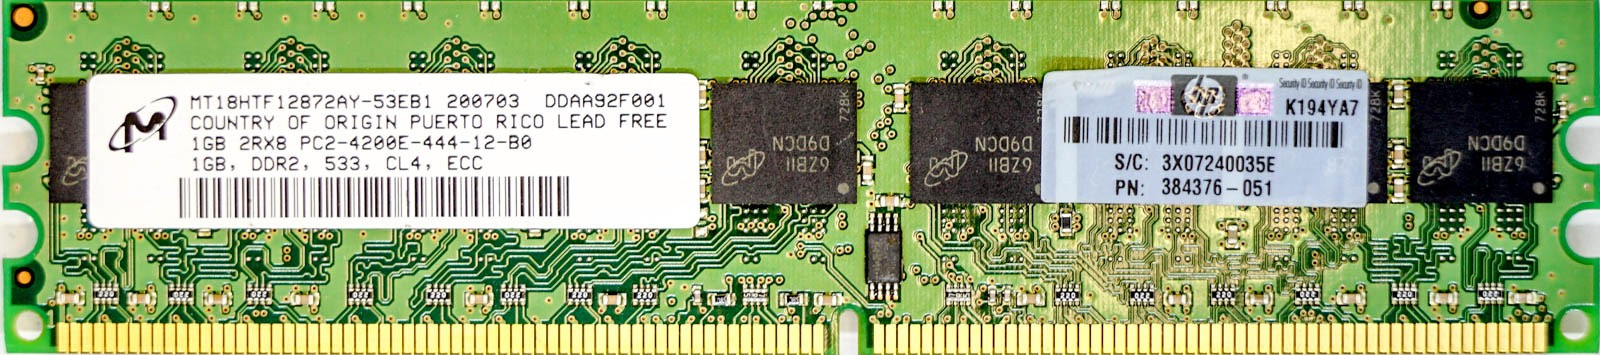 HP (384376-051) - 1GB PC2-4200E (DDR2-533Mhz, 2RX8)